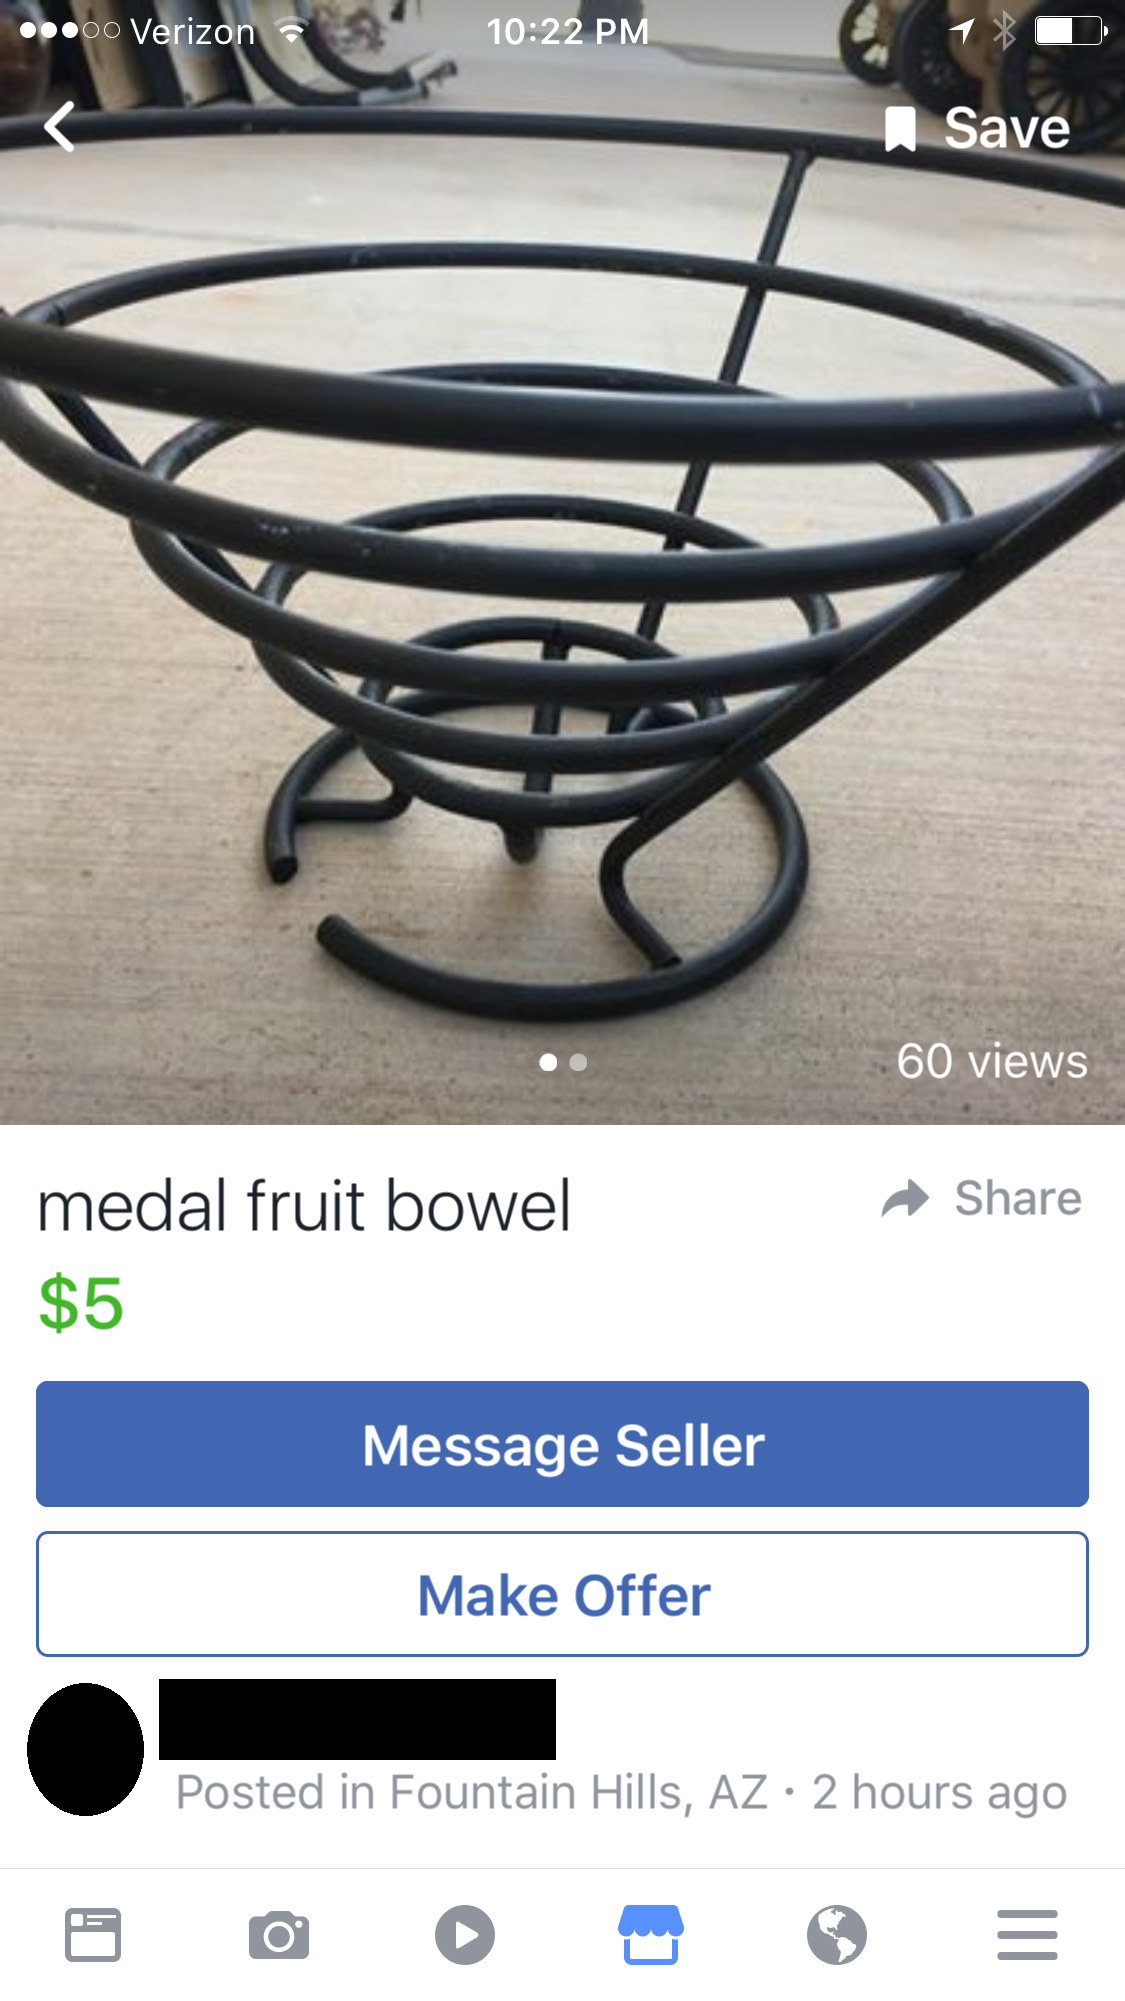 Medal Fruit Bowel